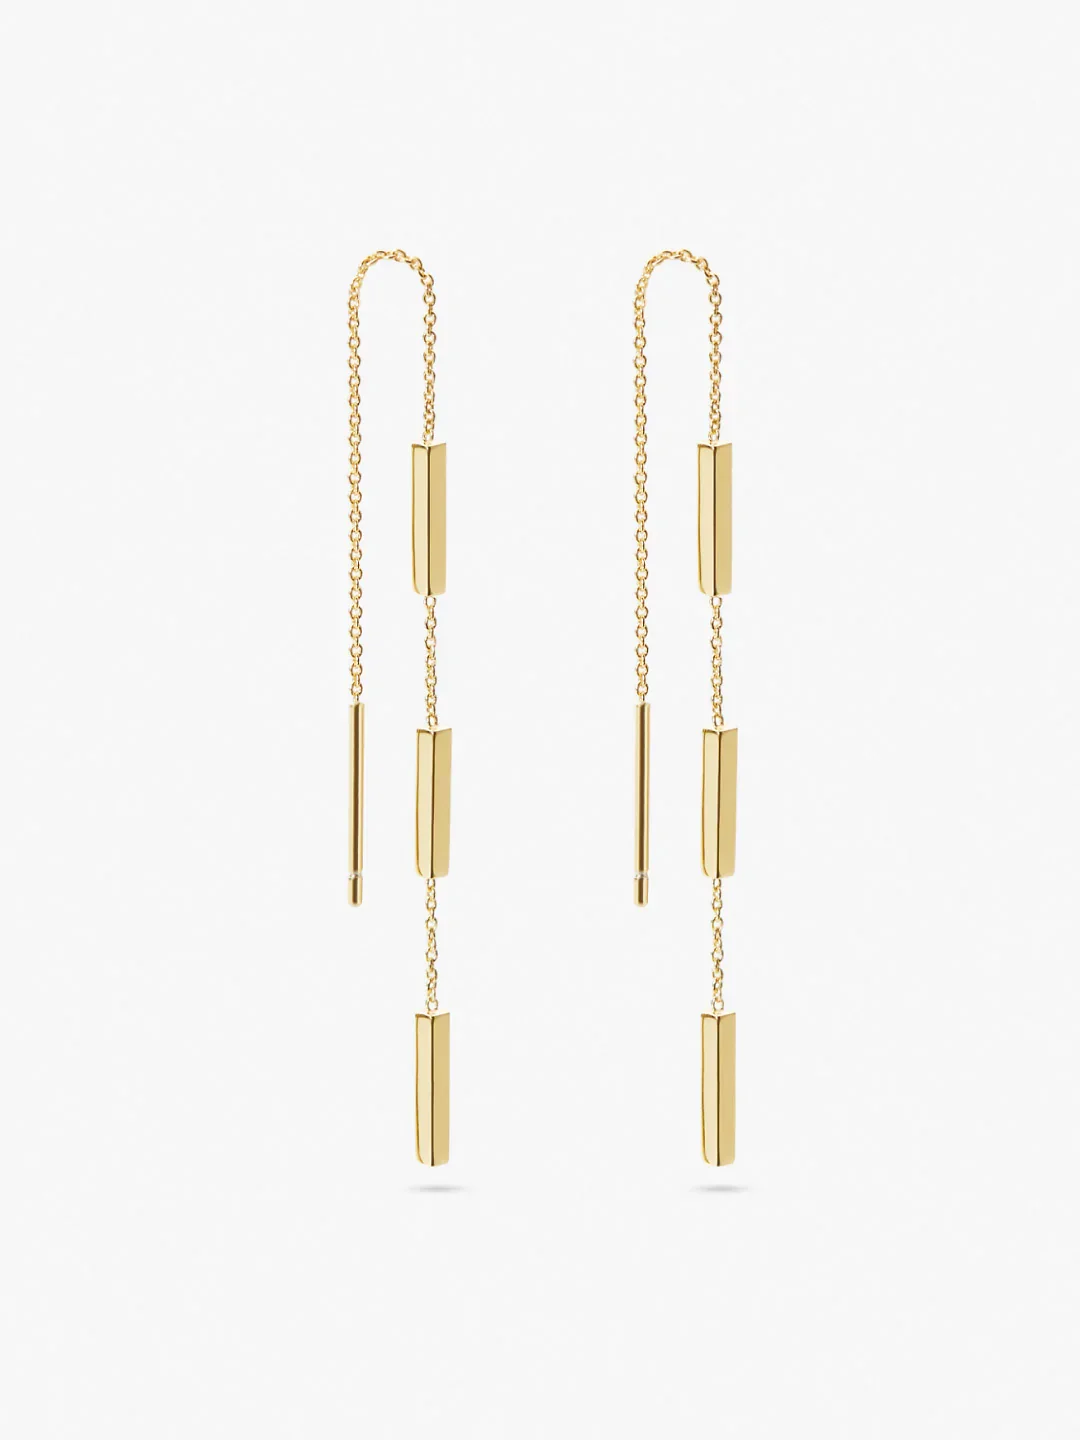 Gold Threader Earrings - Courtney